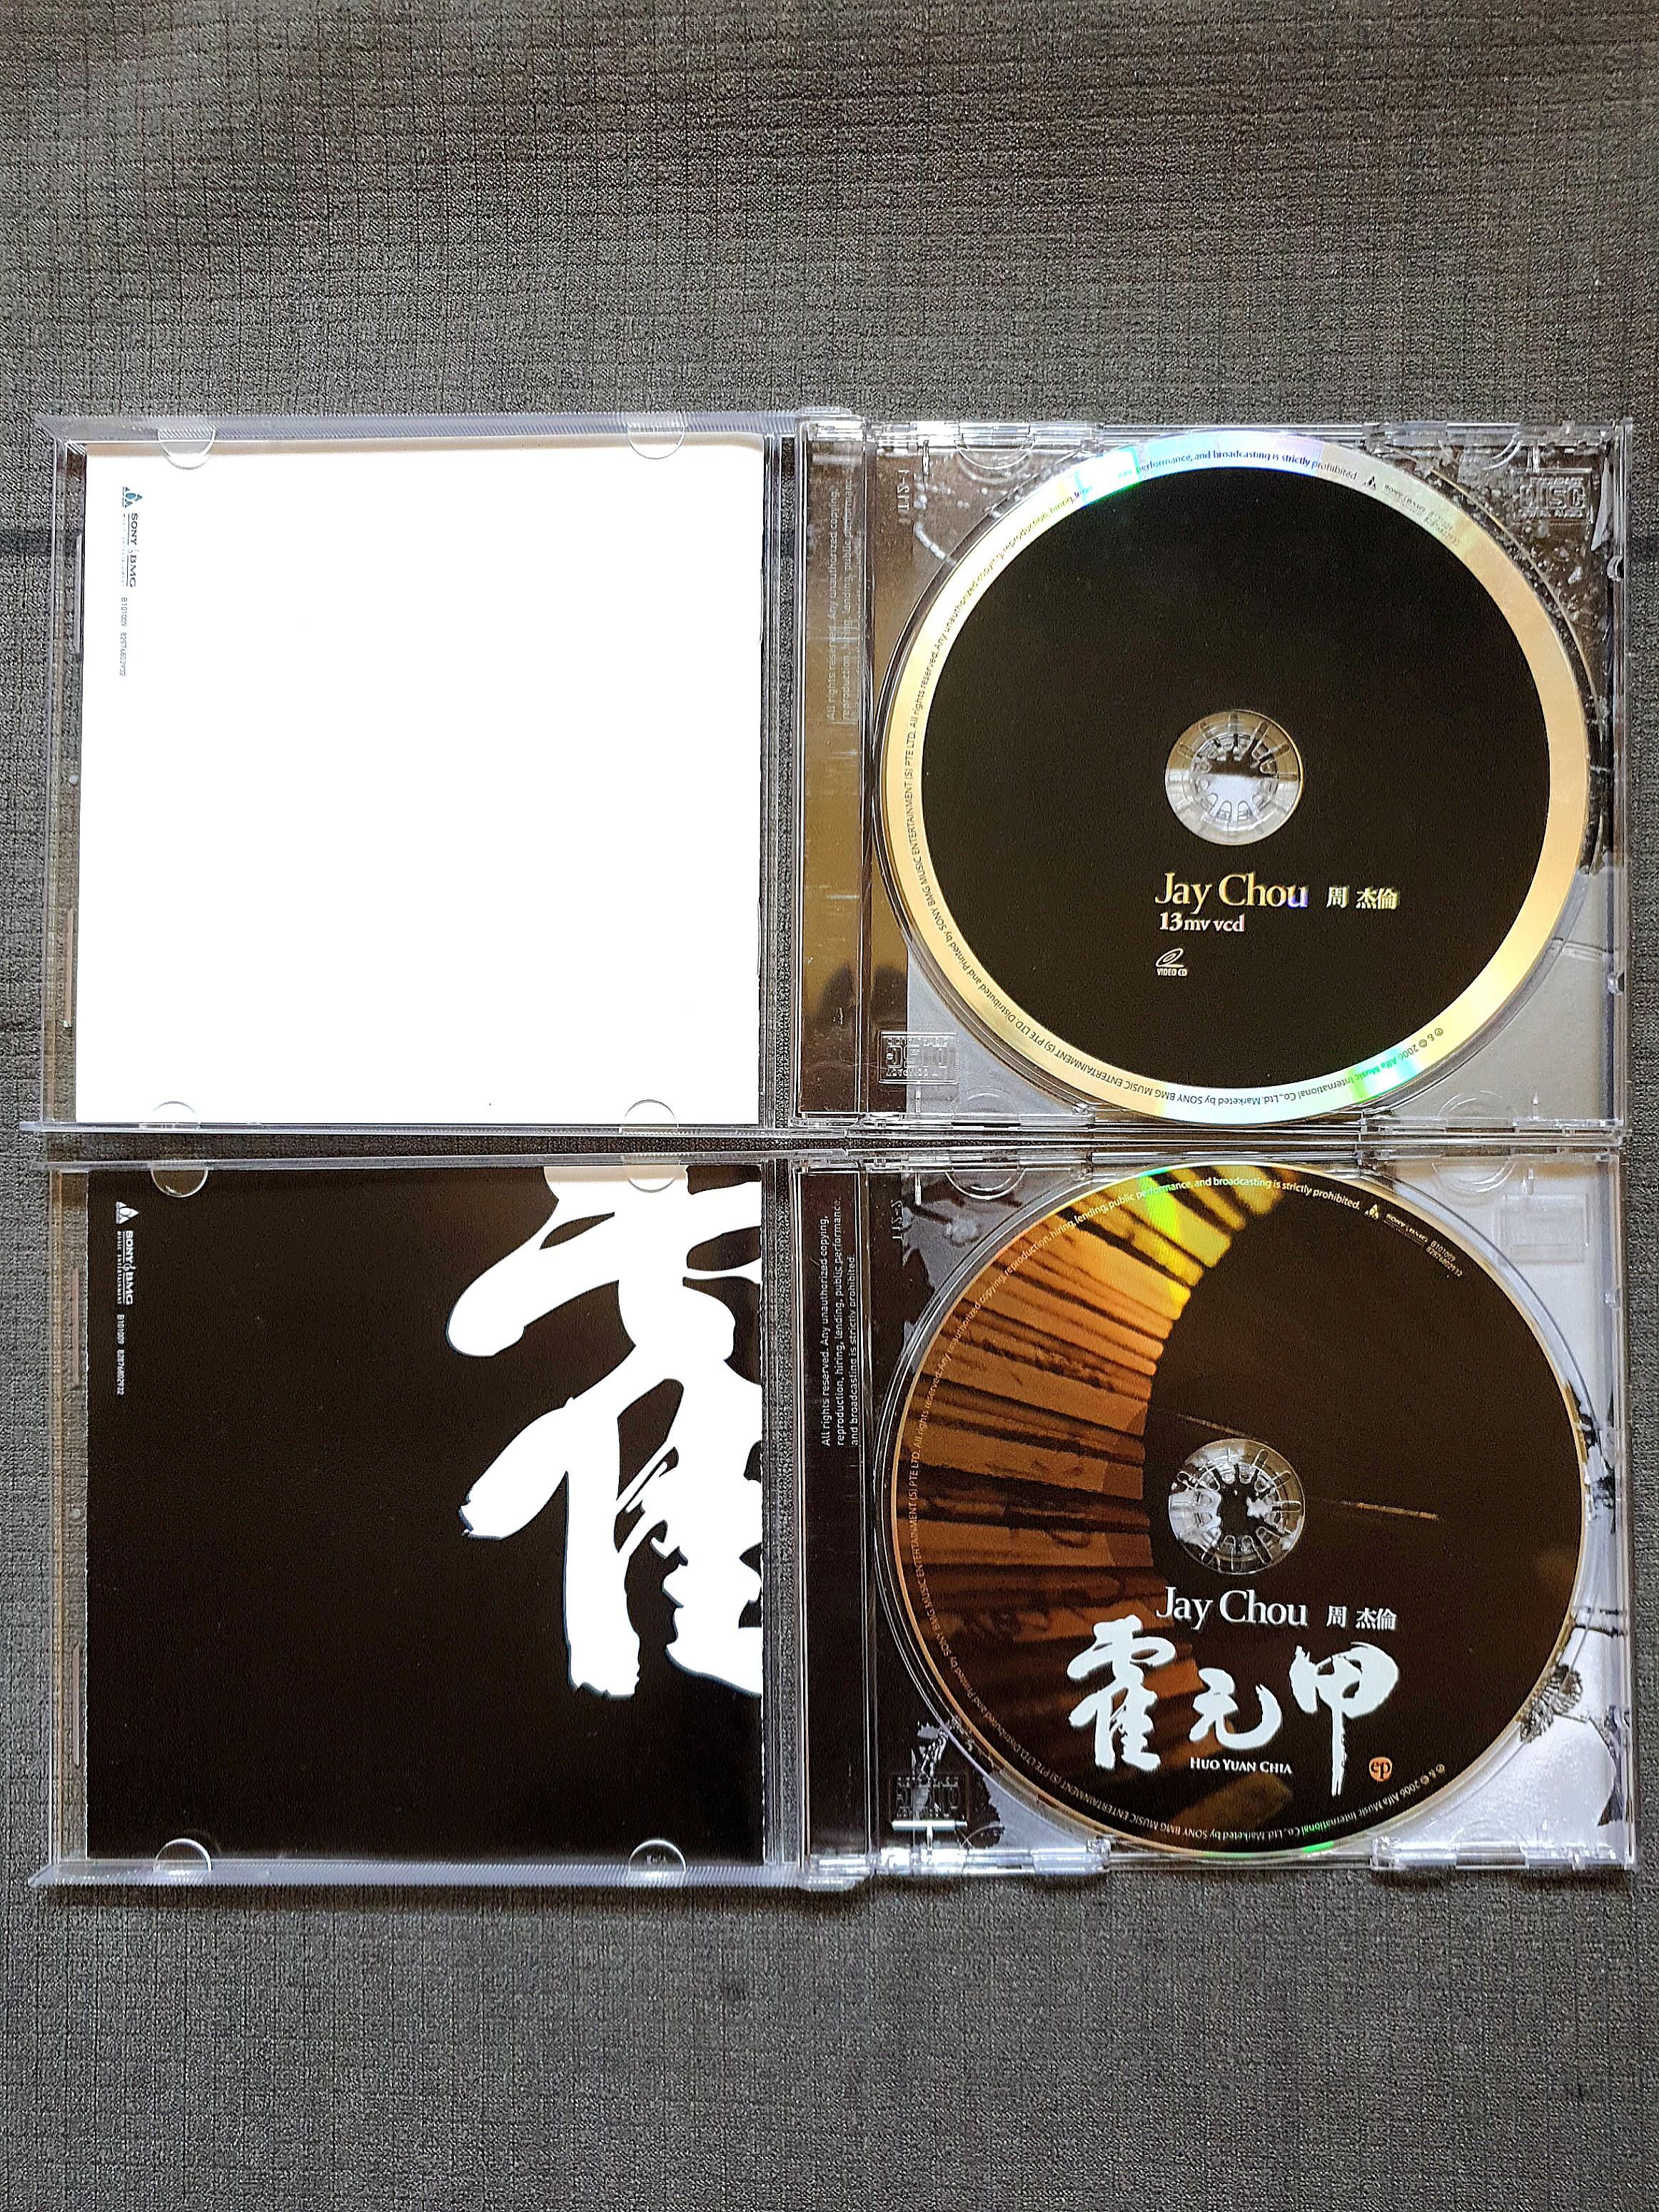 Jay Chou Huo Yuan Jia CD + VCD ( 周杰伦霍元甲), Hobbies & Toys 